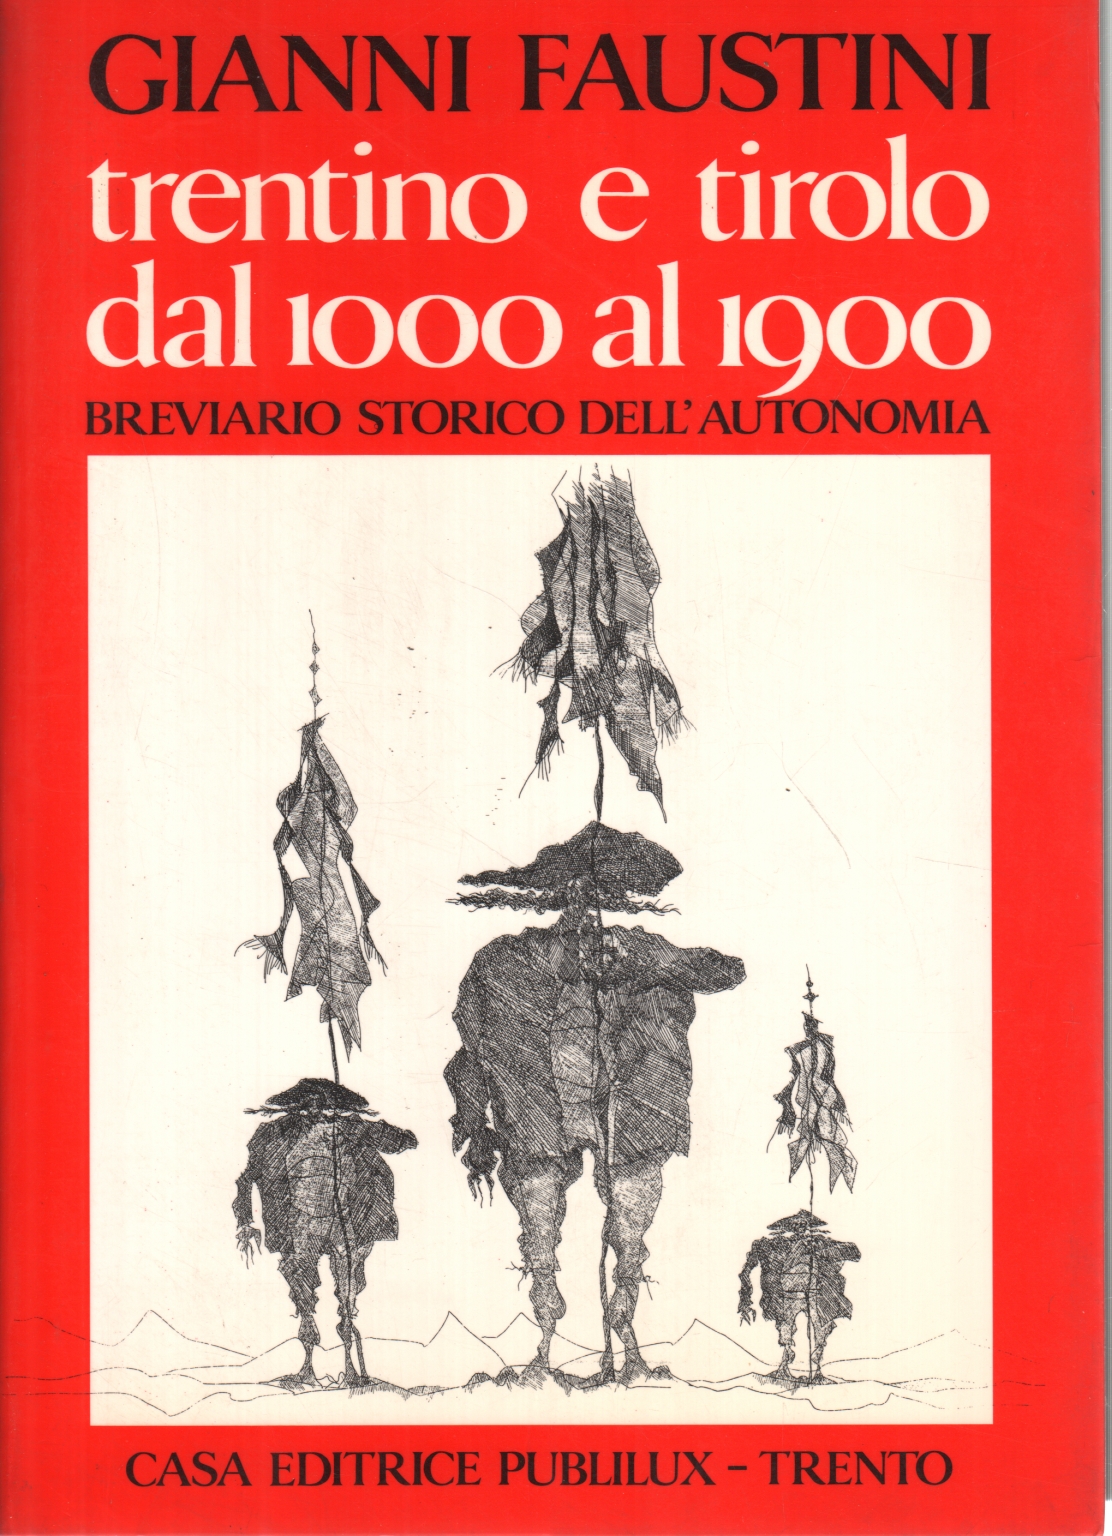 Trentino und Tirol von 1000 bis 1900, Gianni Faustini